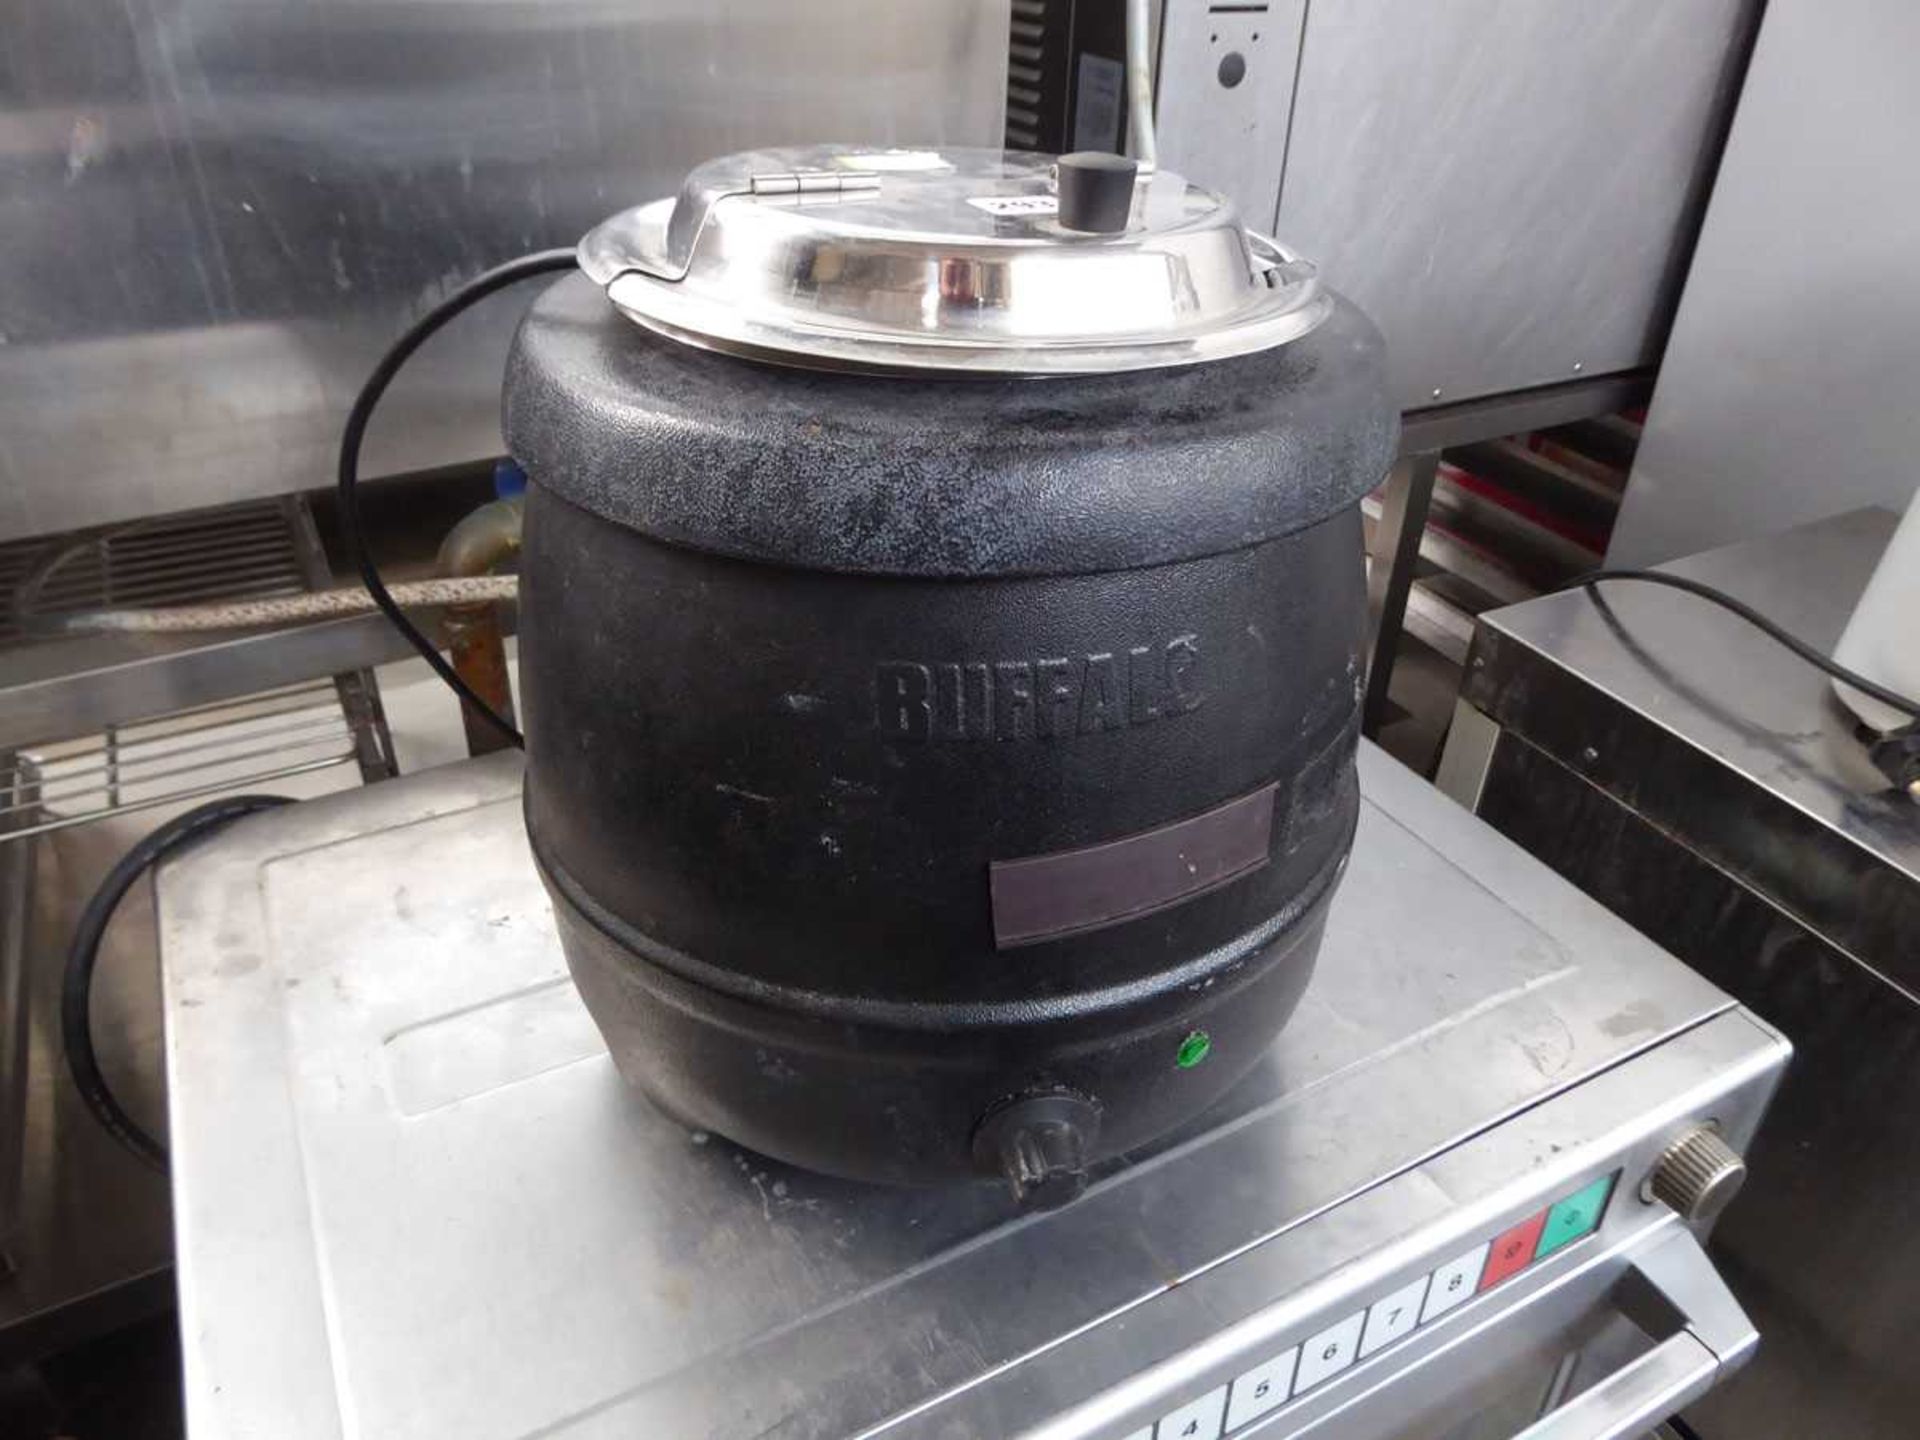 Buffalo soup kettle (No plug)